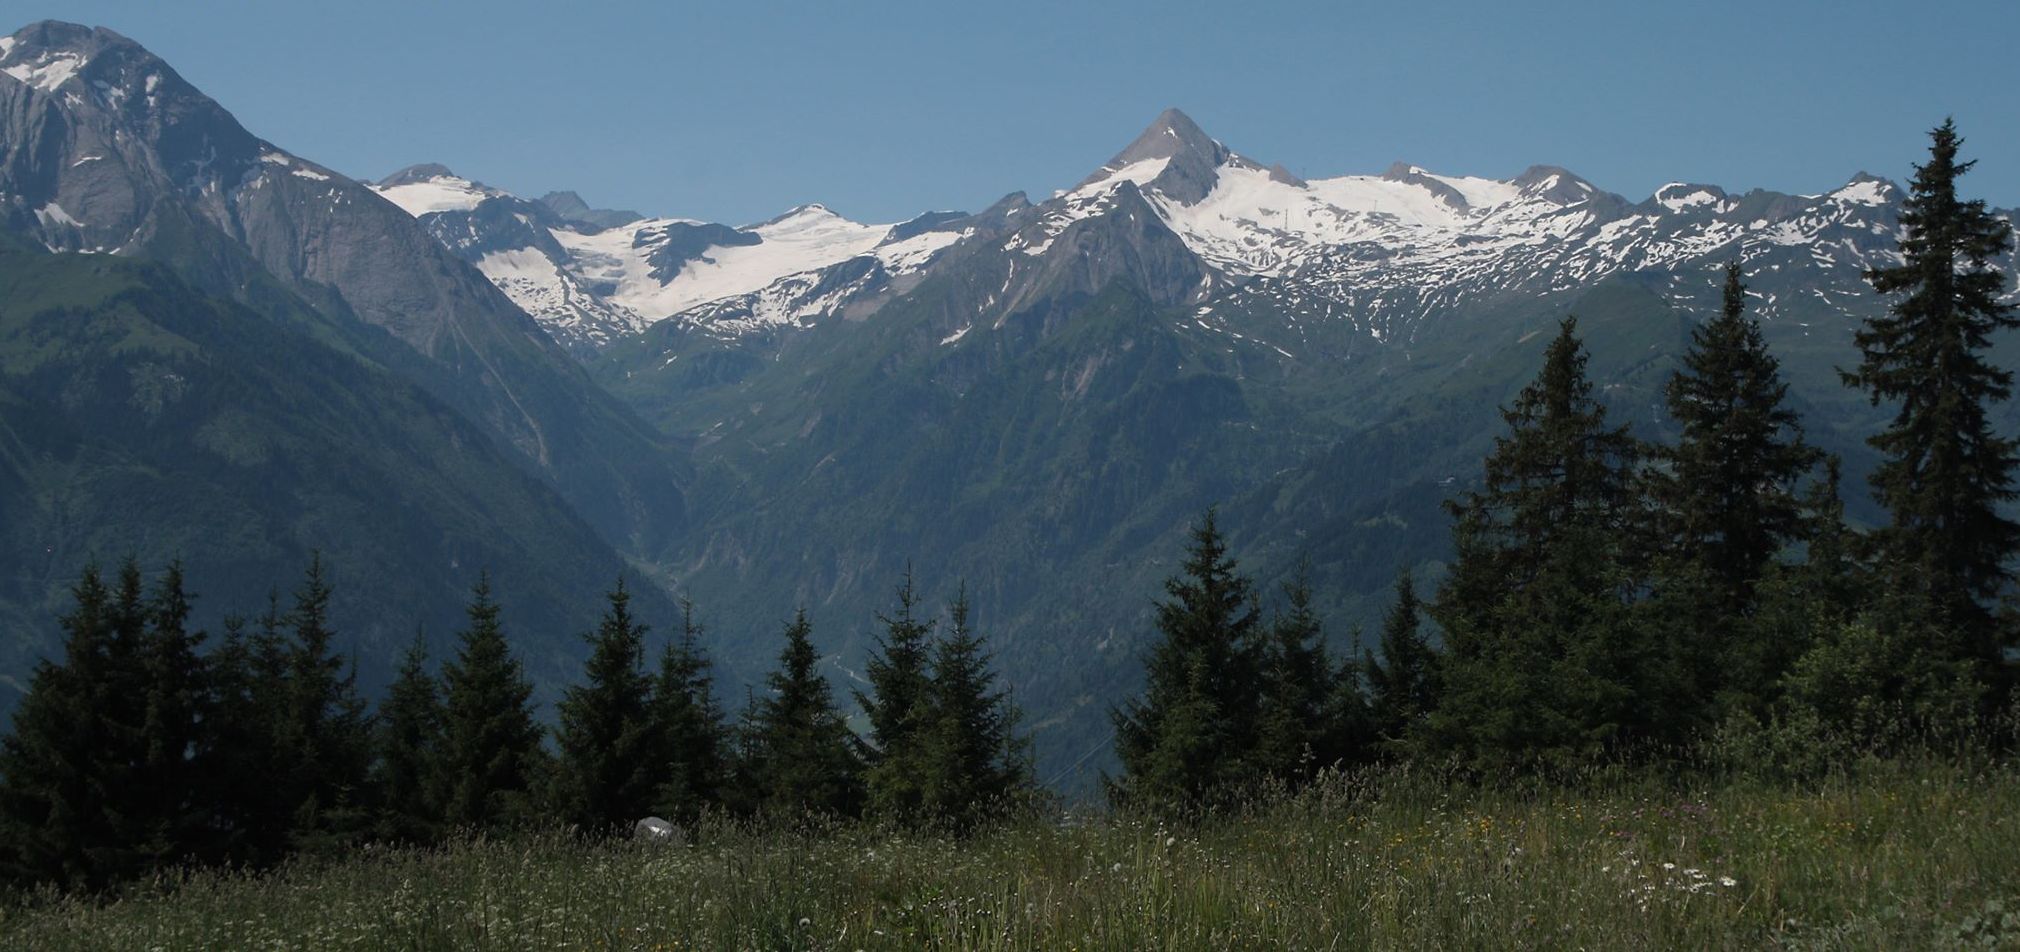 Otztal Alps of the Austrian Tyrol